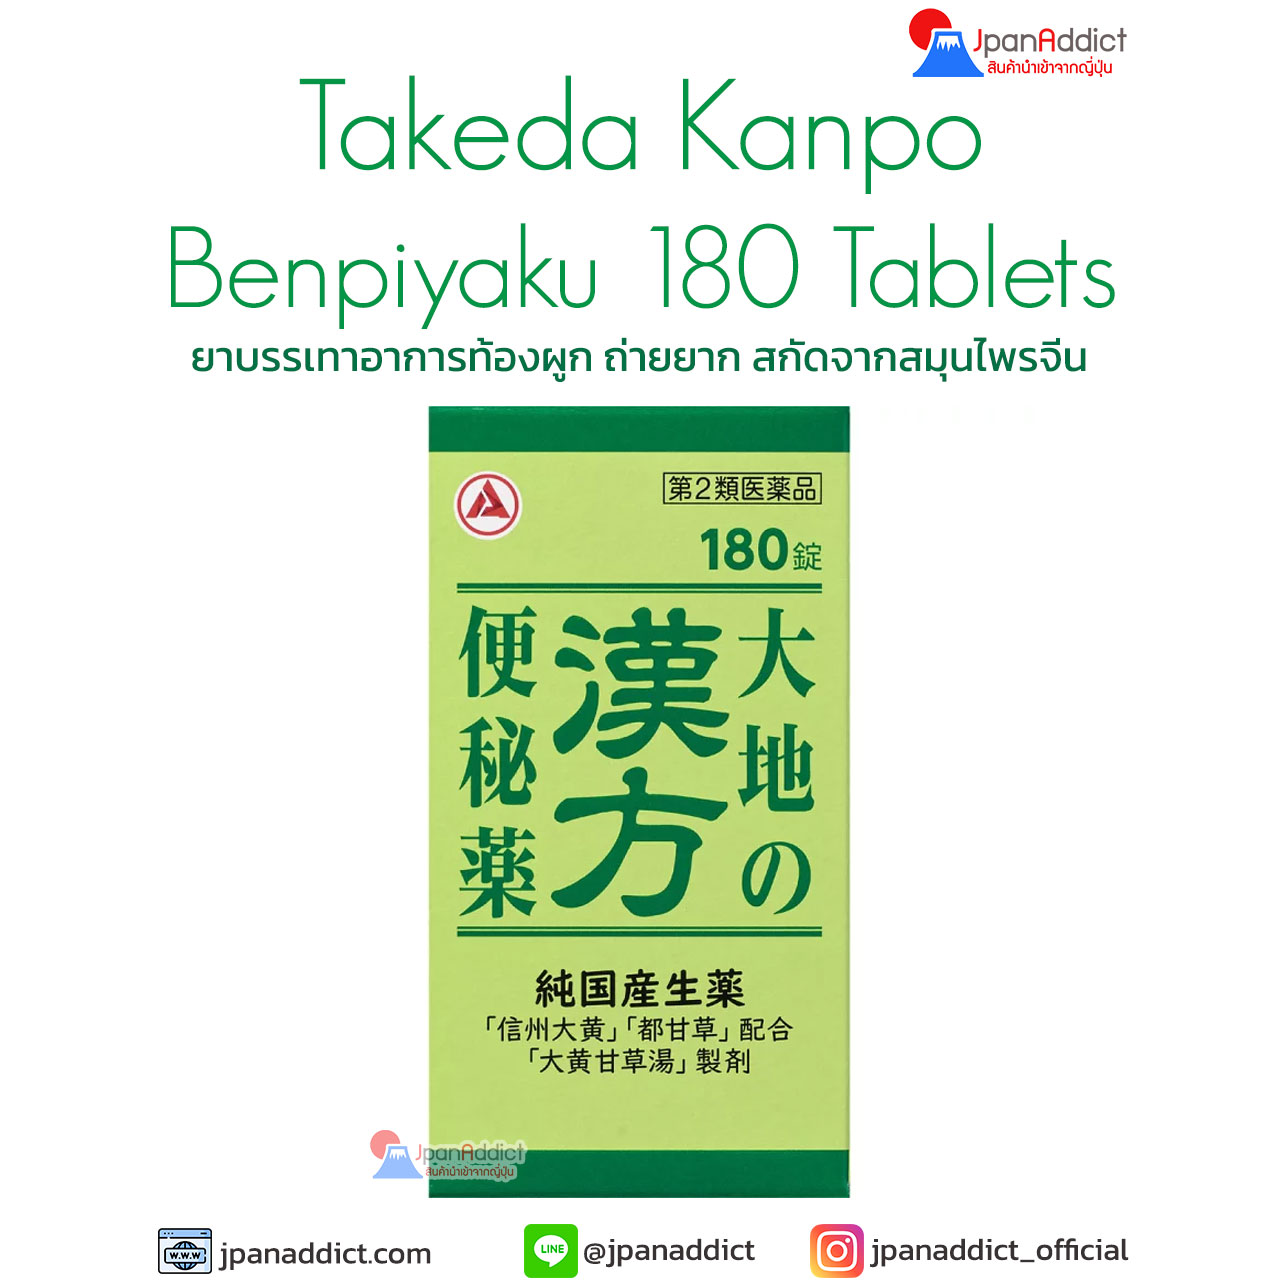 Takeda Benpiyaku-180-Tablets